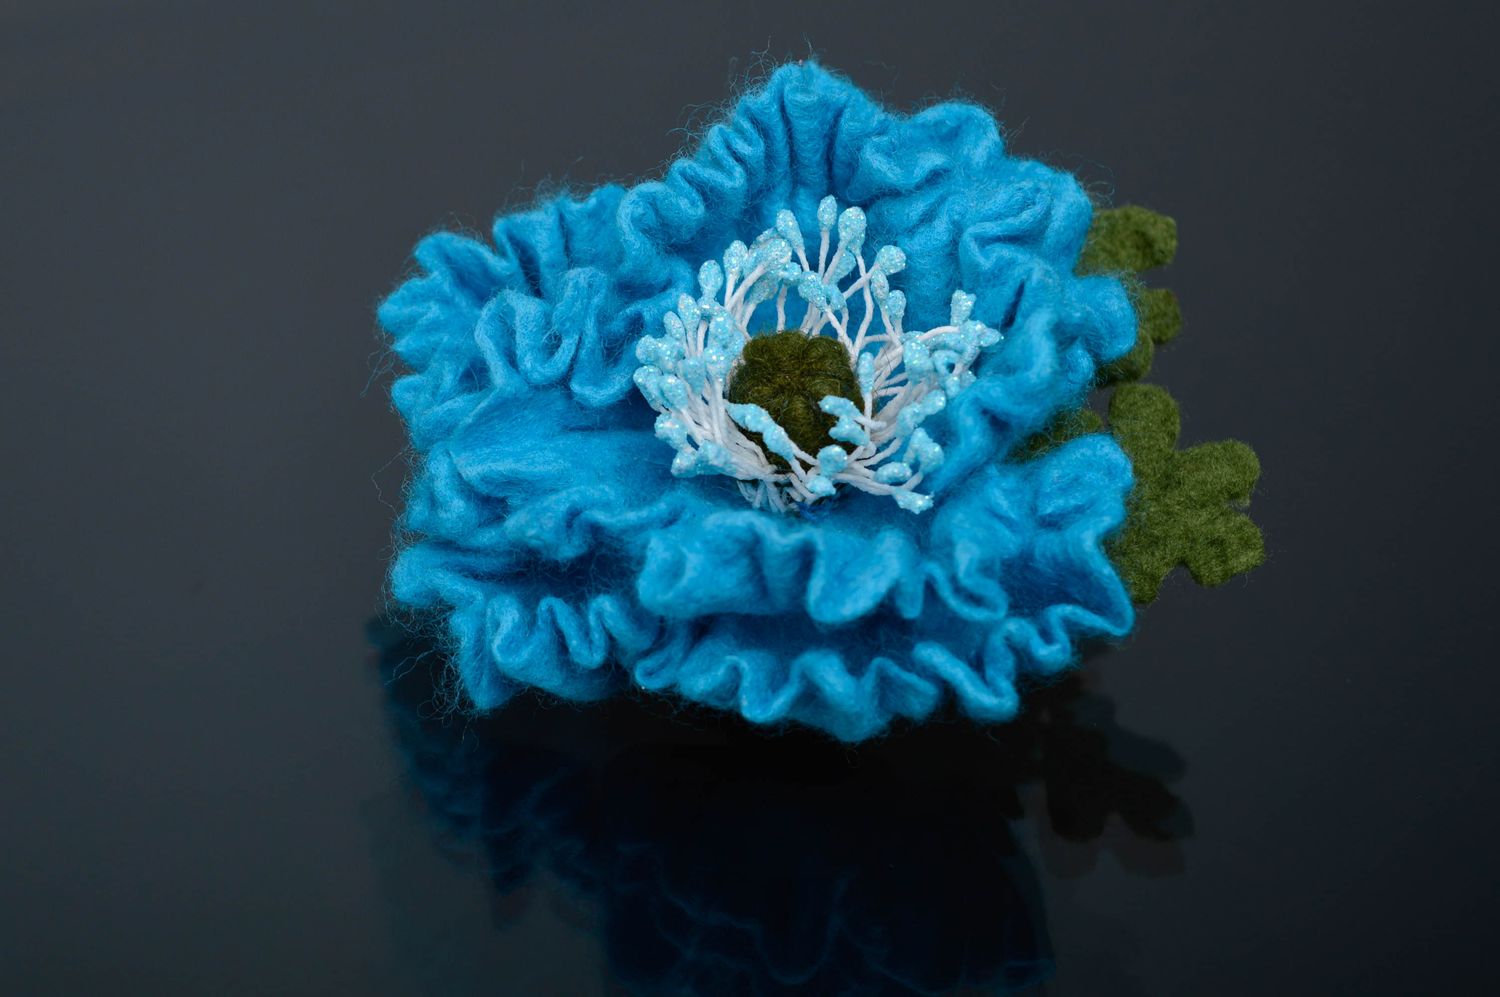 Брошь из шерсти ручной работы в технике валяния Синий цветок фото 1